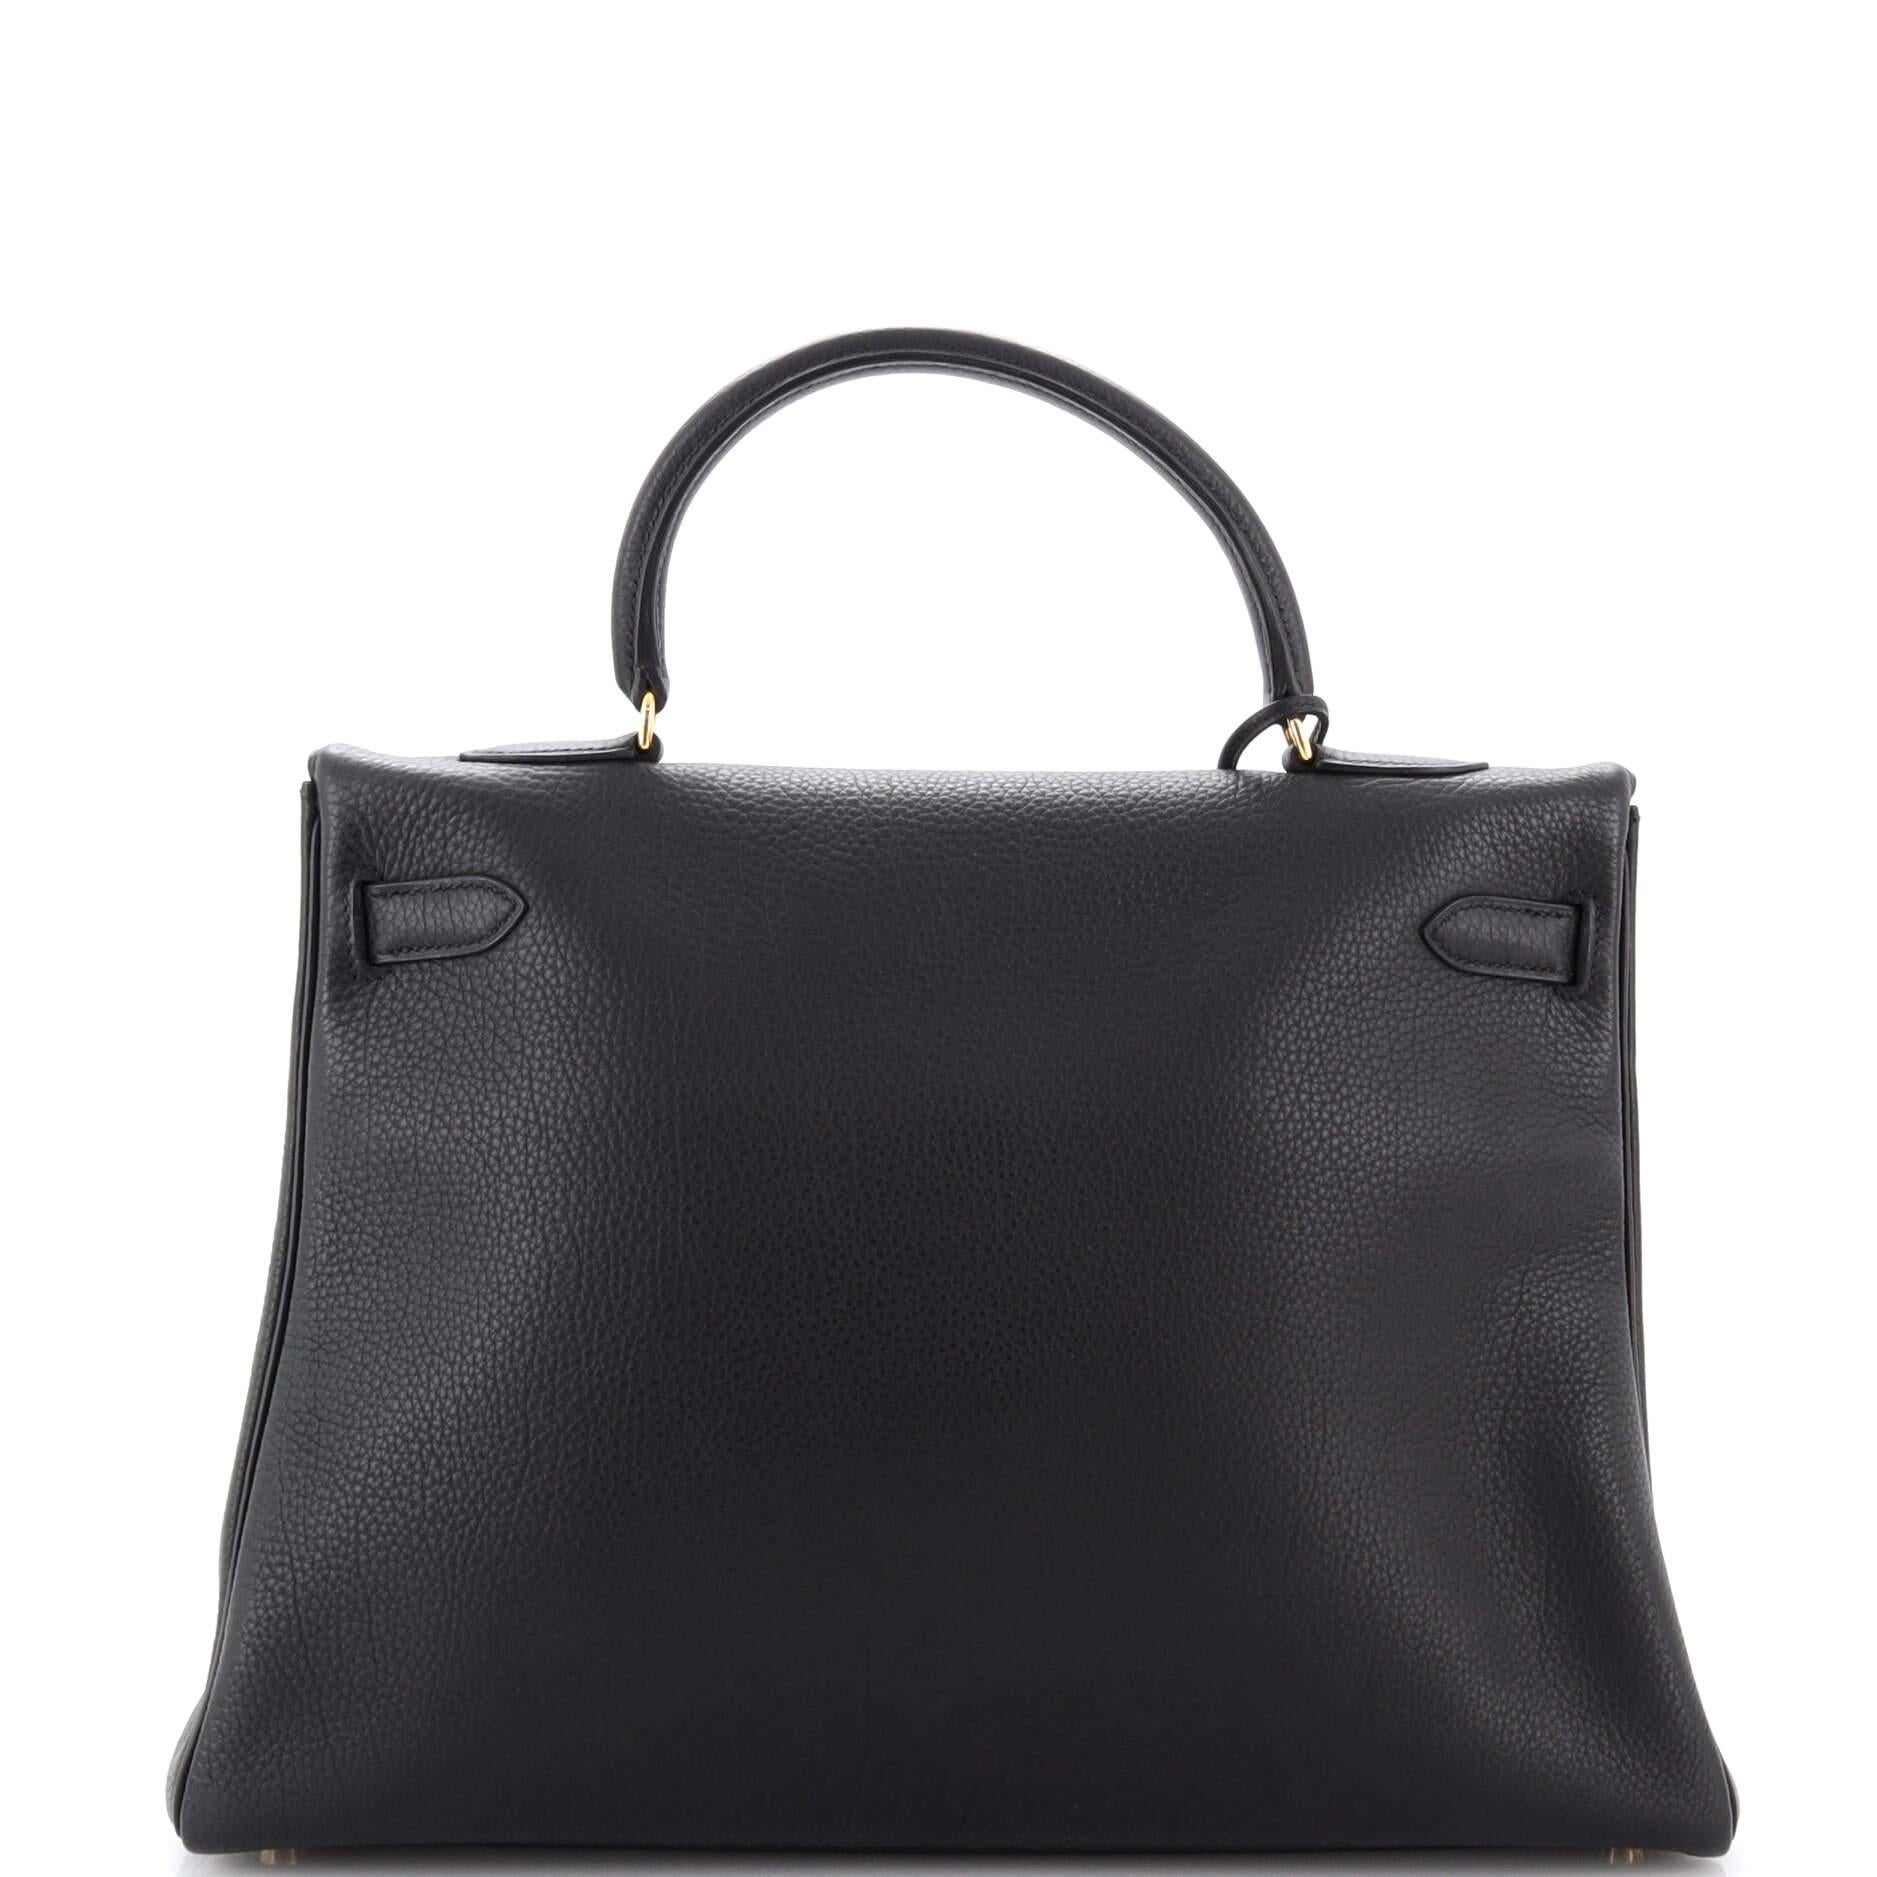 Women's or Men's Hermes Kelly Handbag Noir Togo with Gold Hardware 35